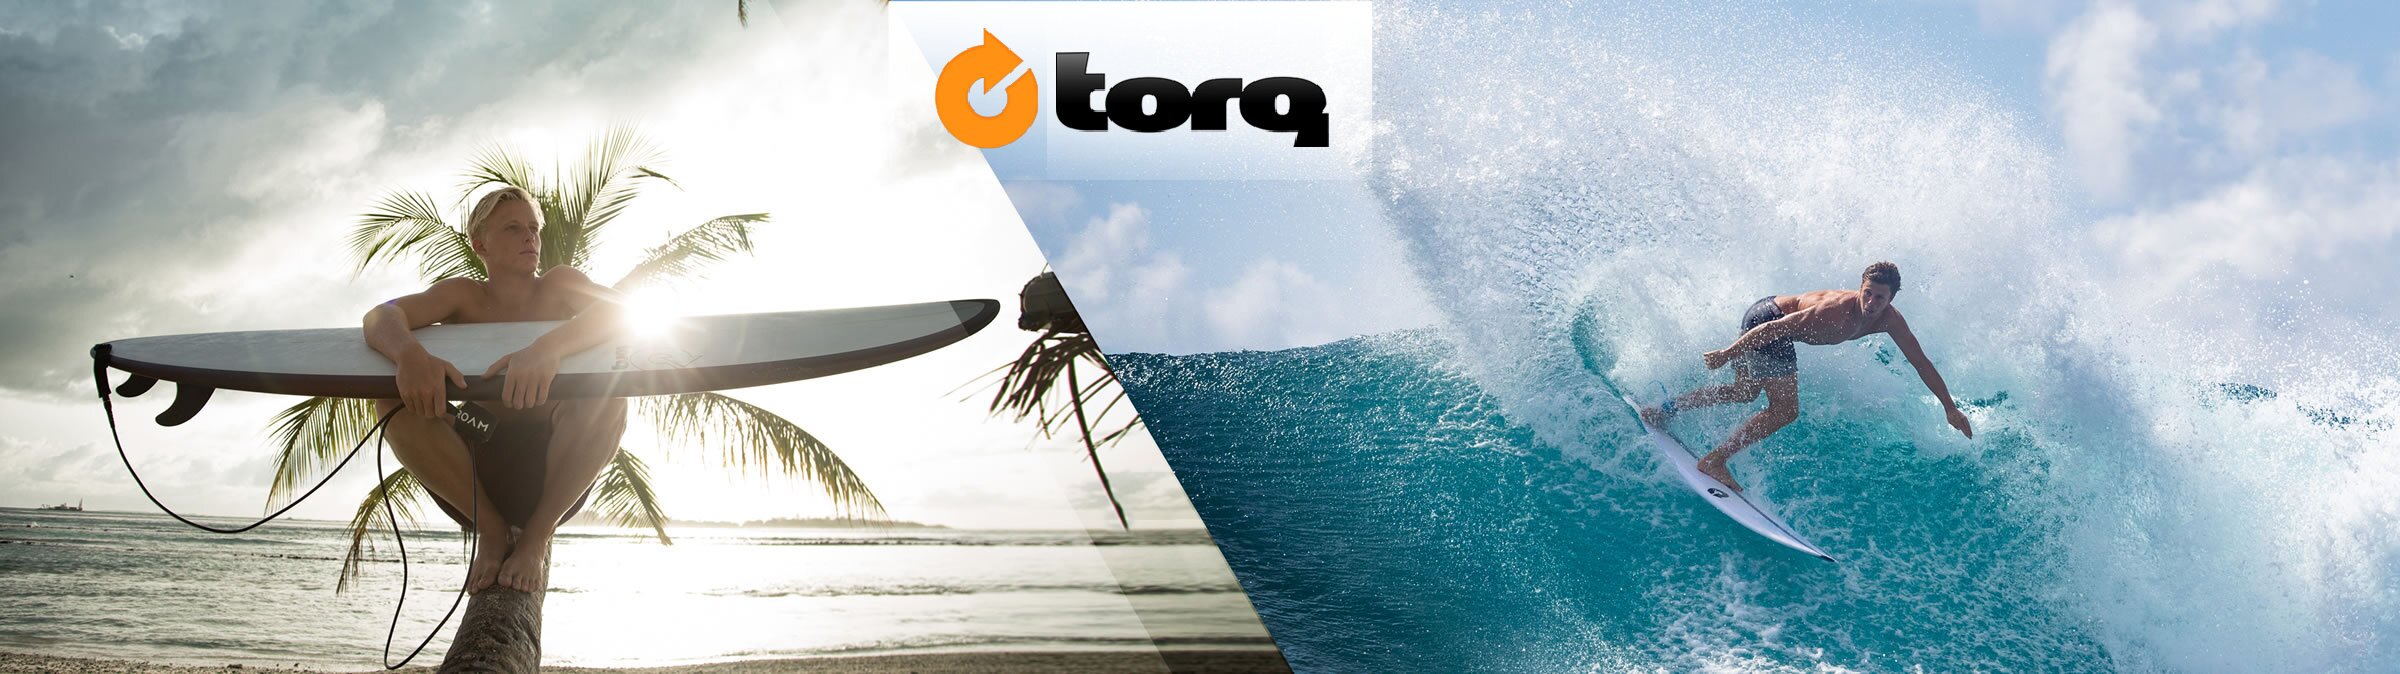 torq surfboard kaufen